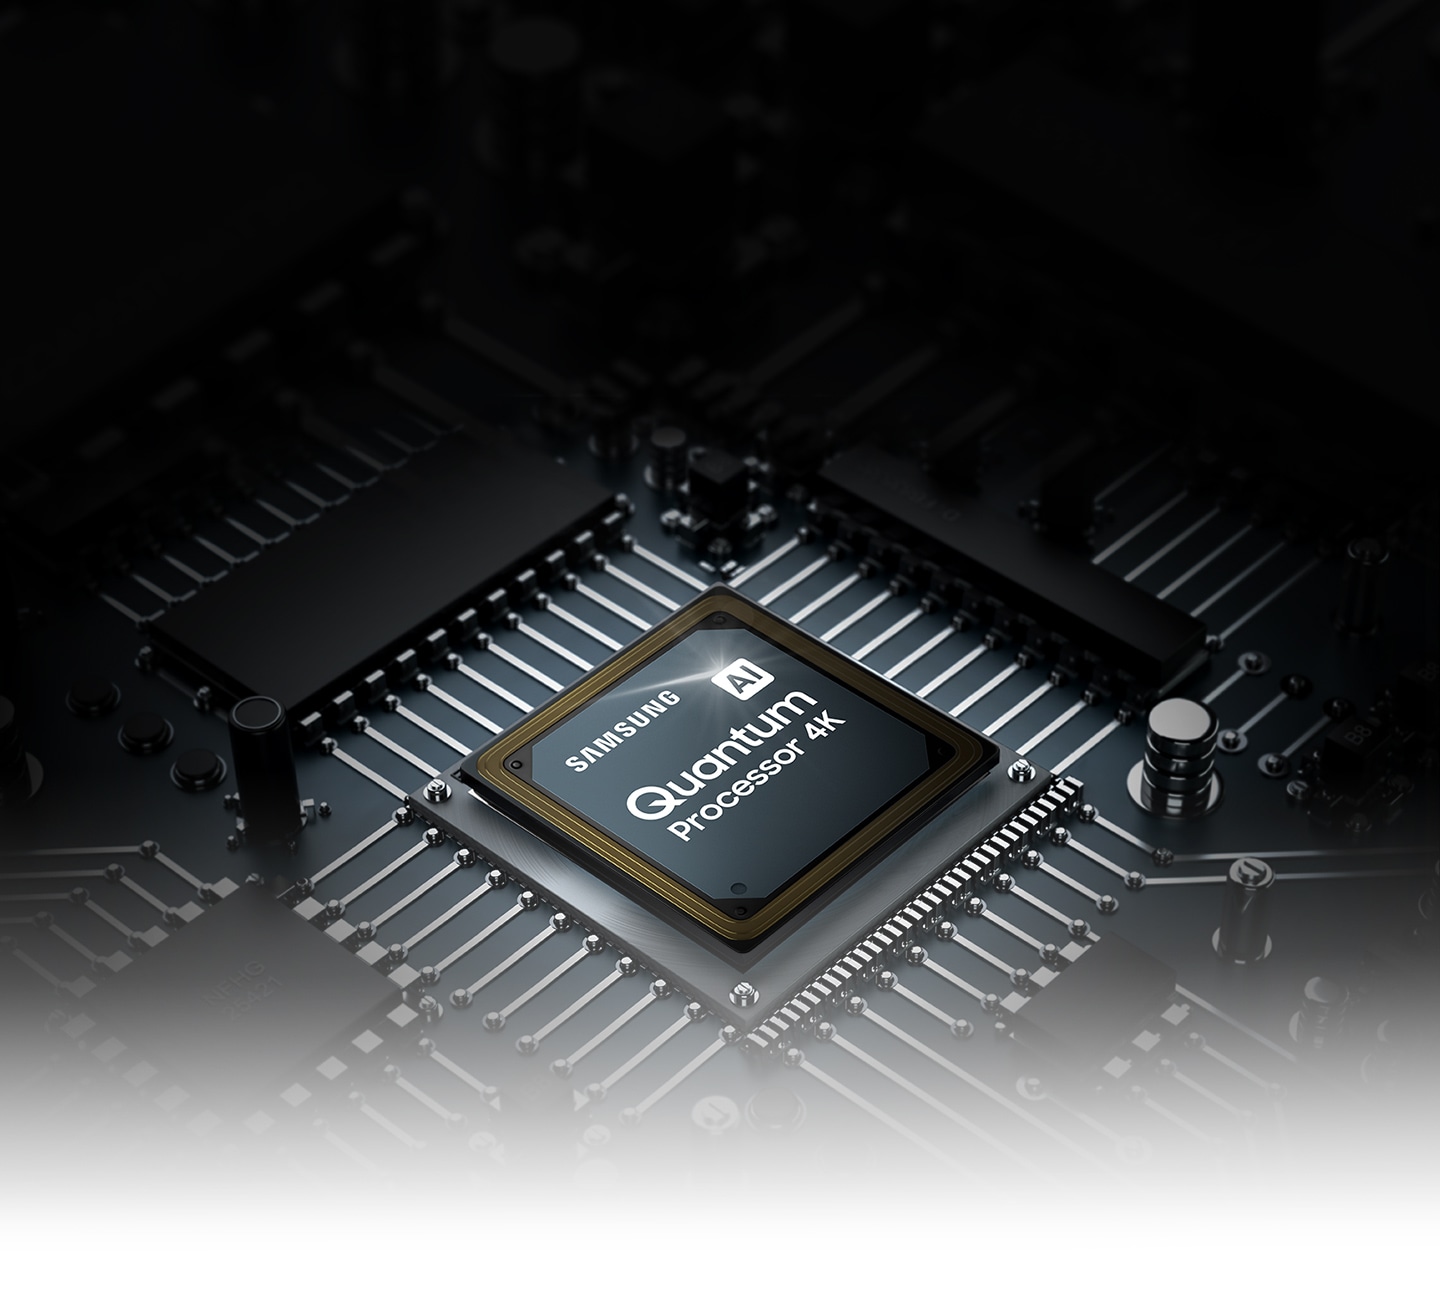 Prikazan je QLED TV procesorski čip. Na vrhu se mogu vidjeti Samsung logotip, kao i logotip AI Quantum Processor 4K.